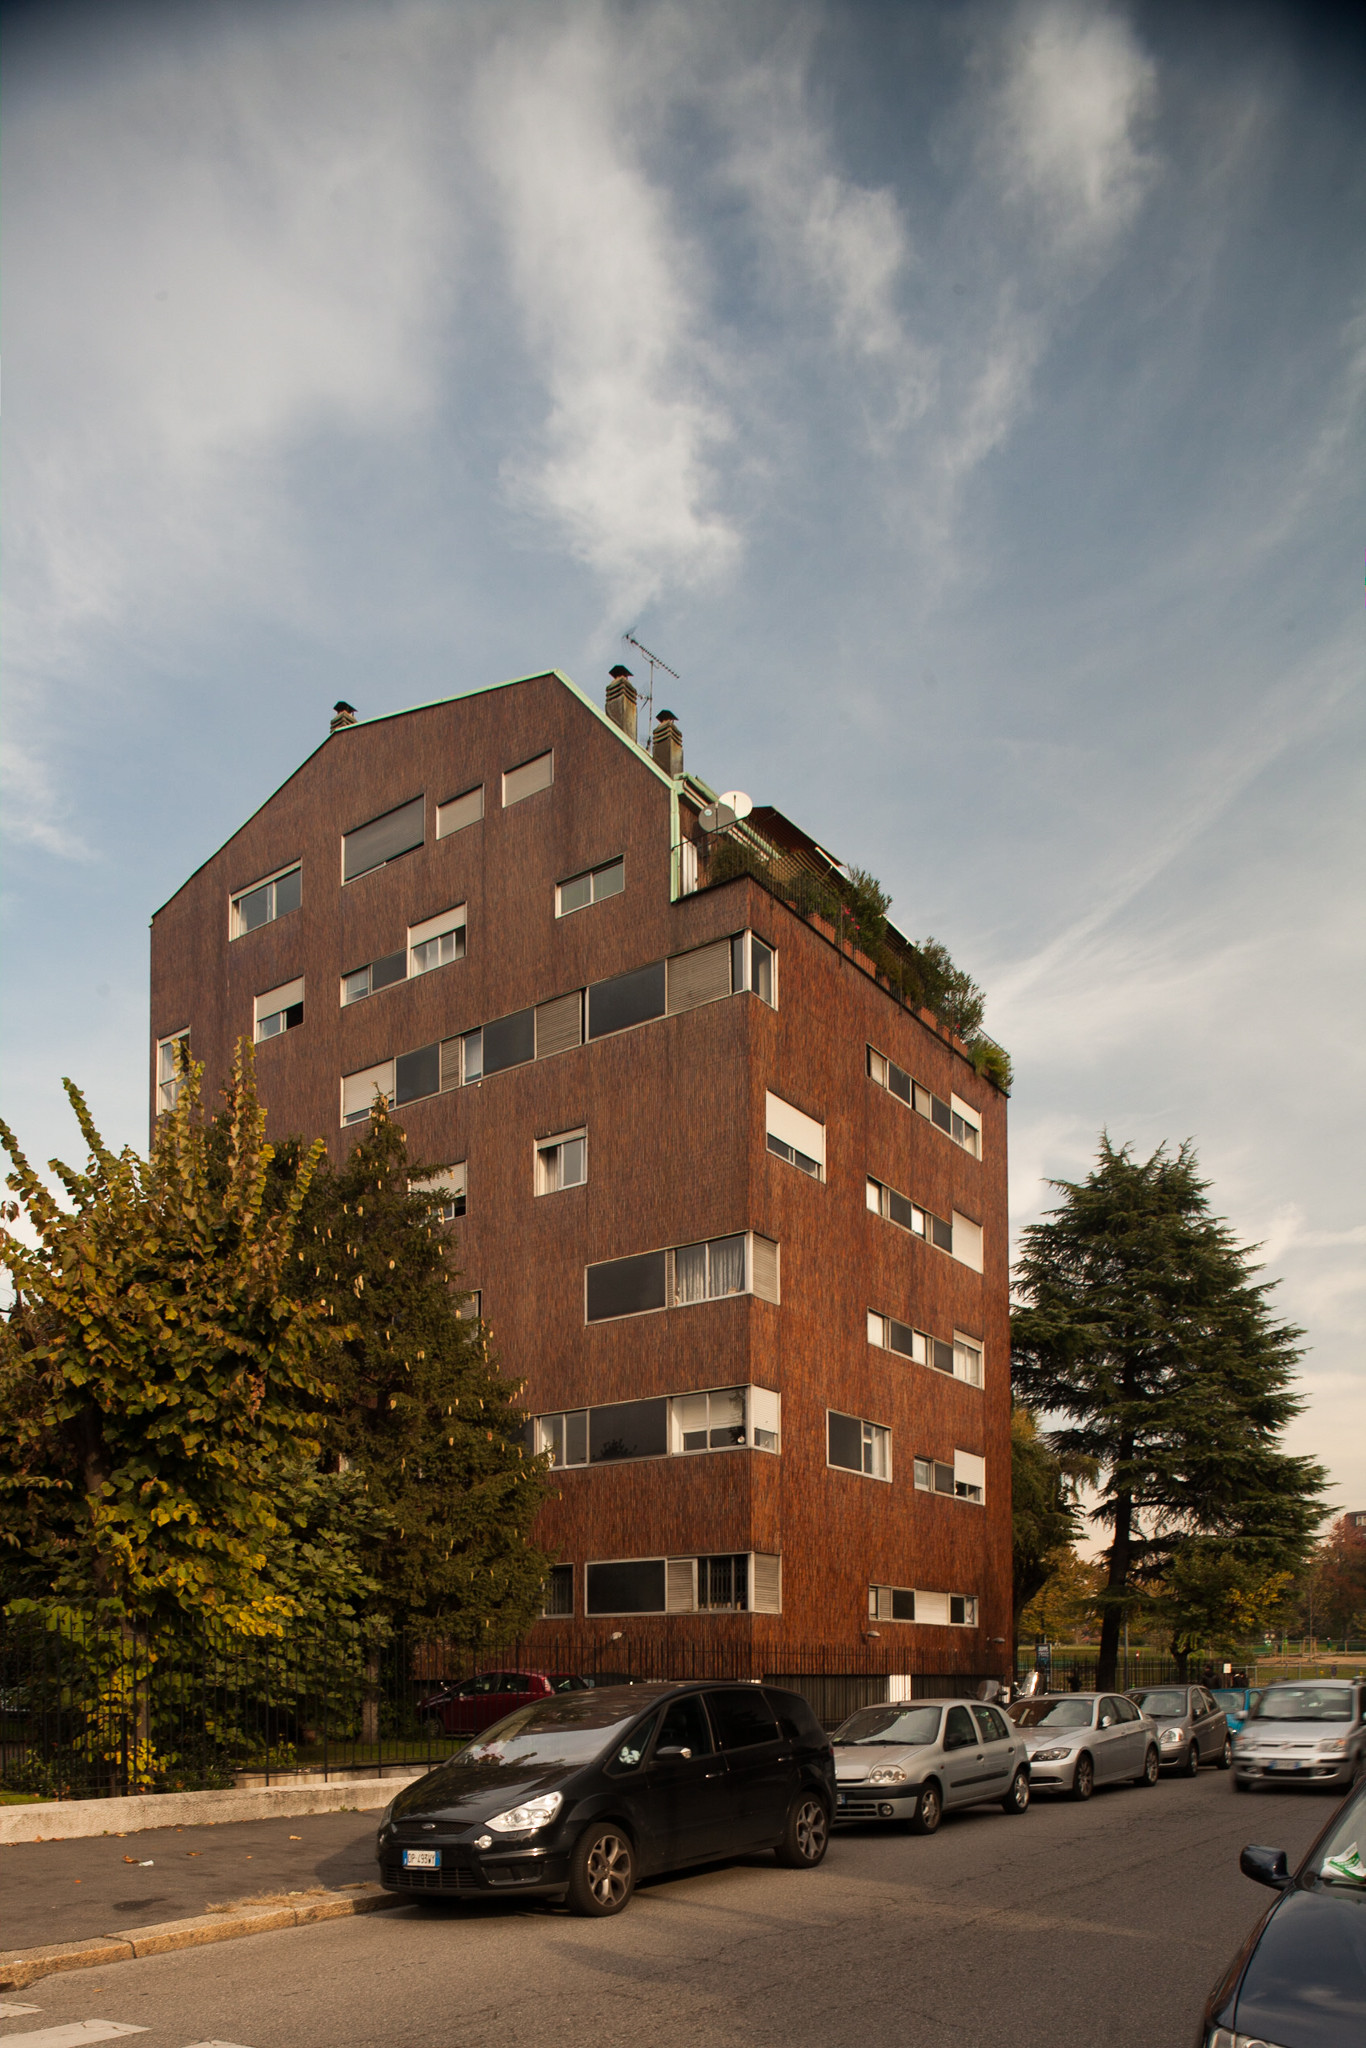 Edificio per abitazioni, piazza Carbonari 2, Milano, 1960‑1961